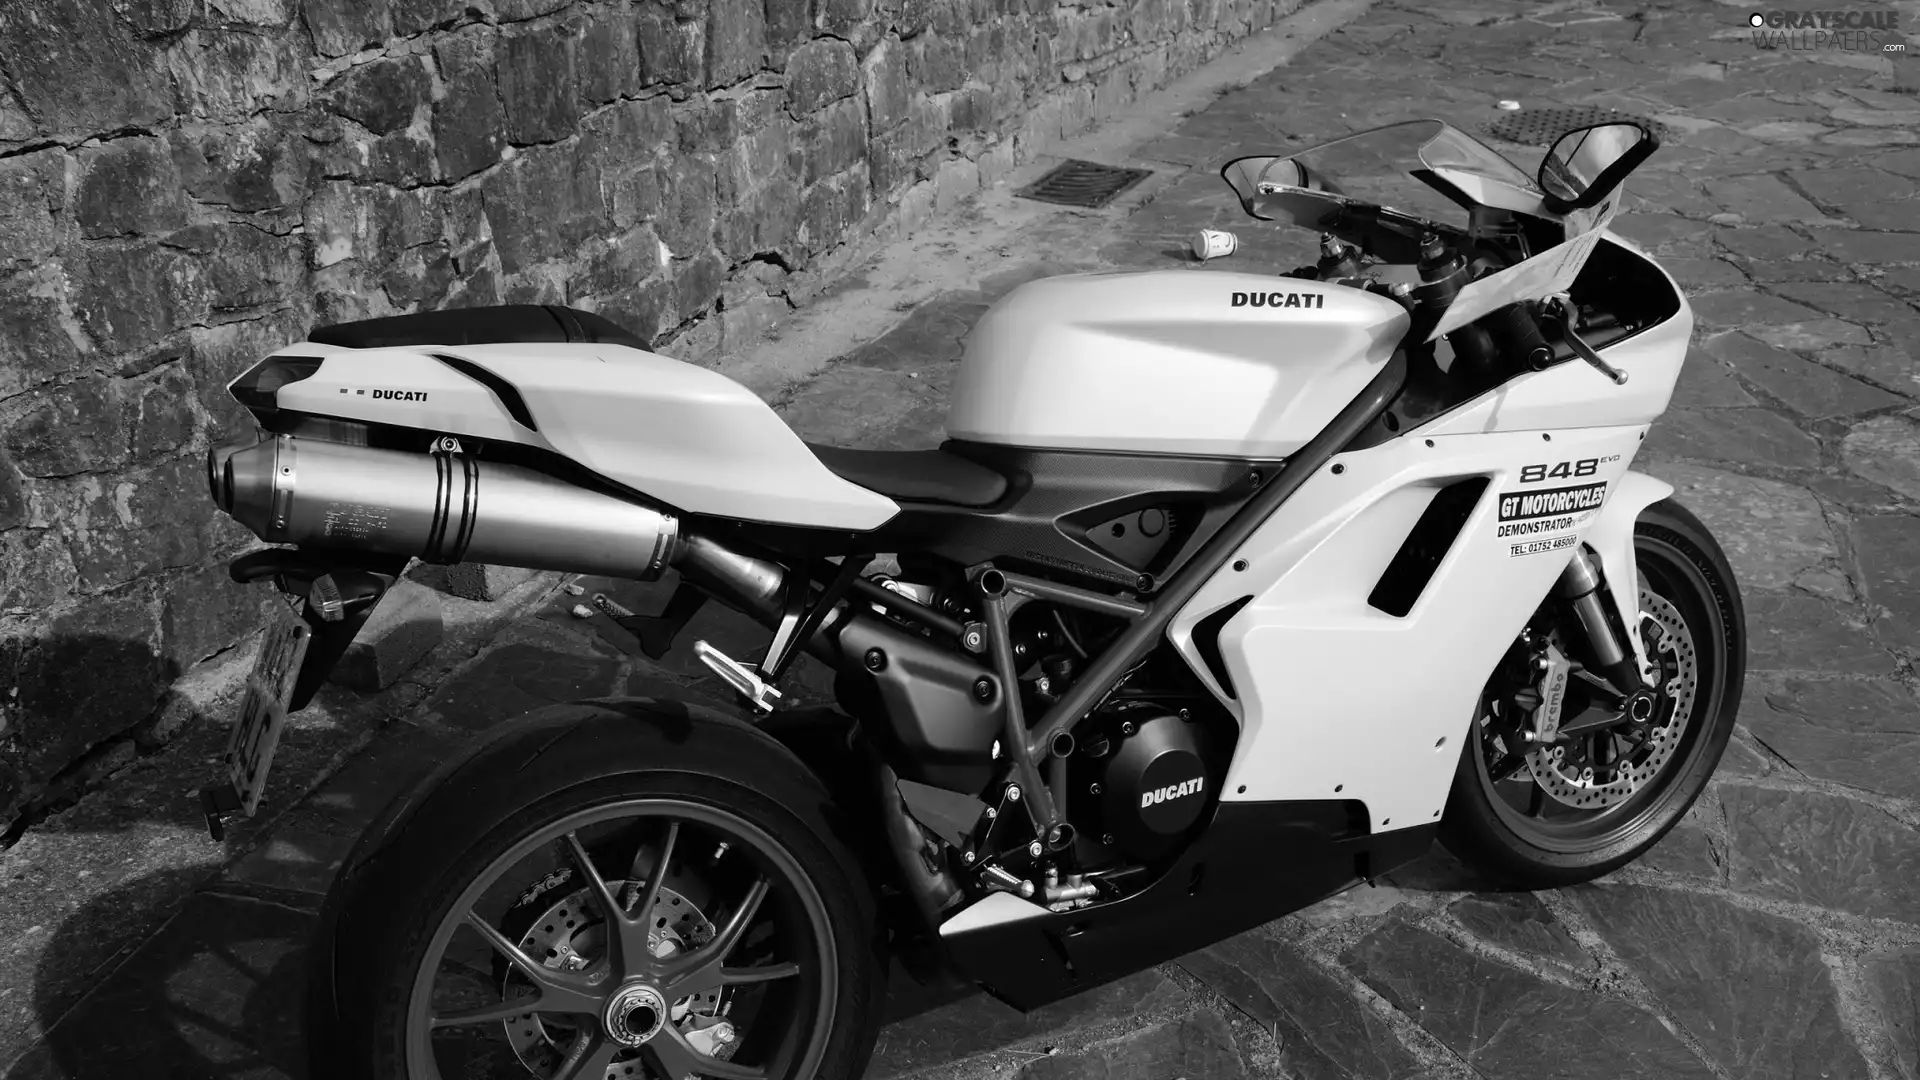 848, motor-bike, Ducati